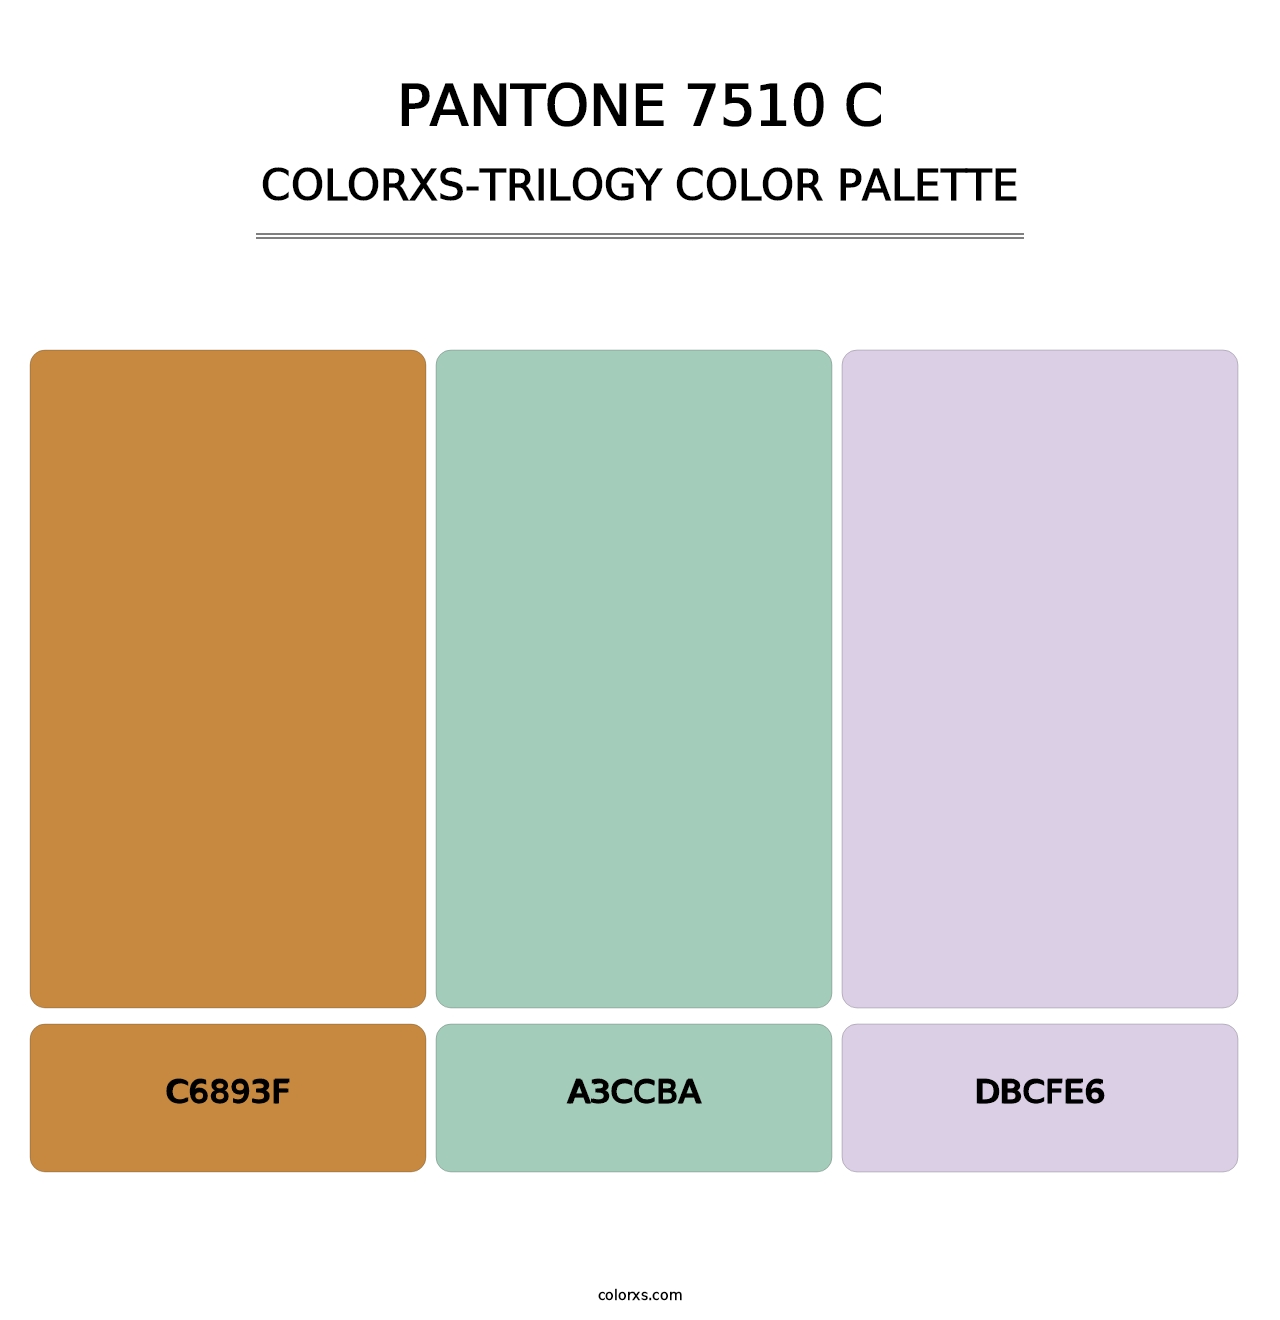 PANTONE 7510 C - Colorxs Trilogy Palette